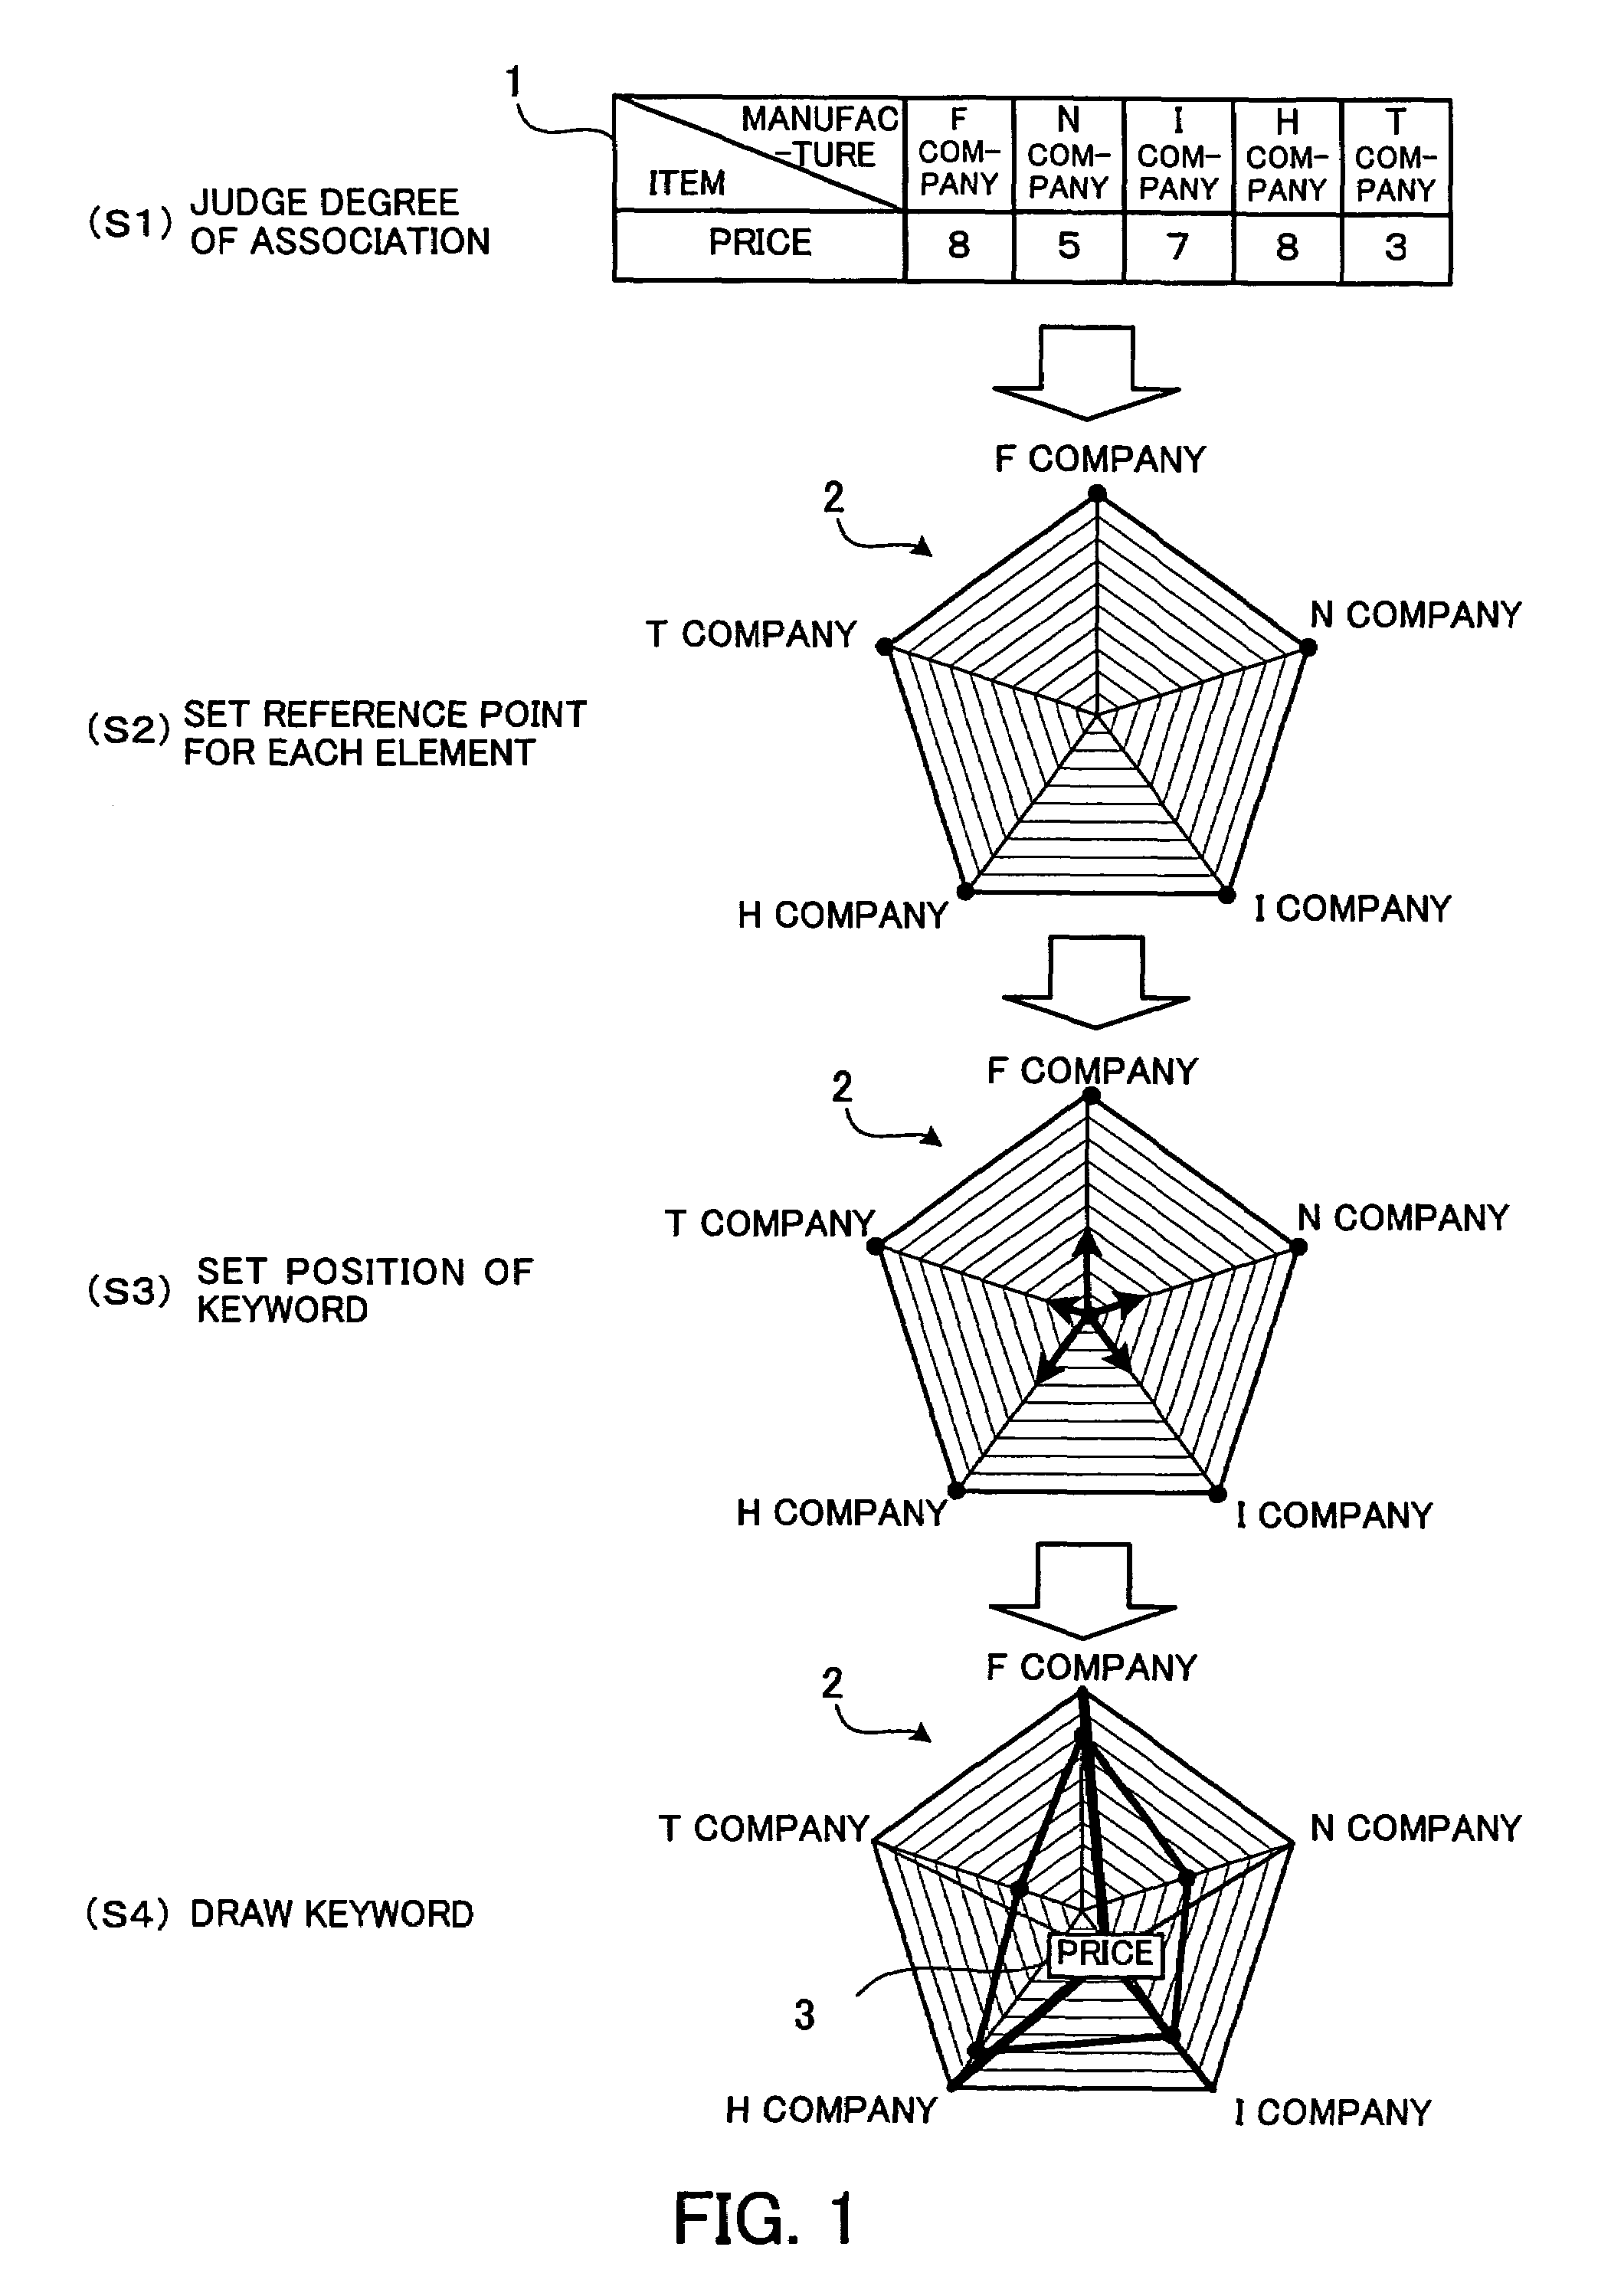 Program and method for displaying a radar chart